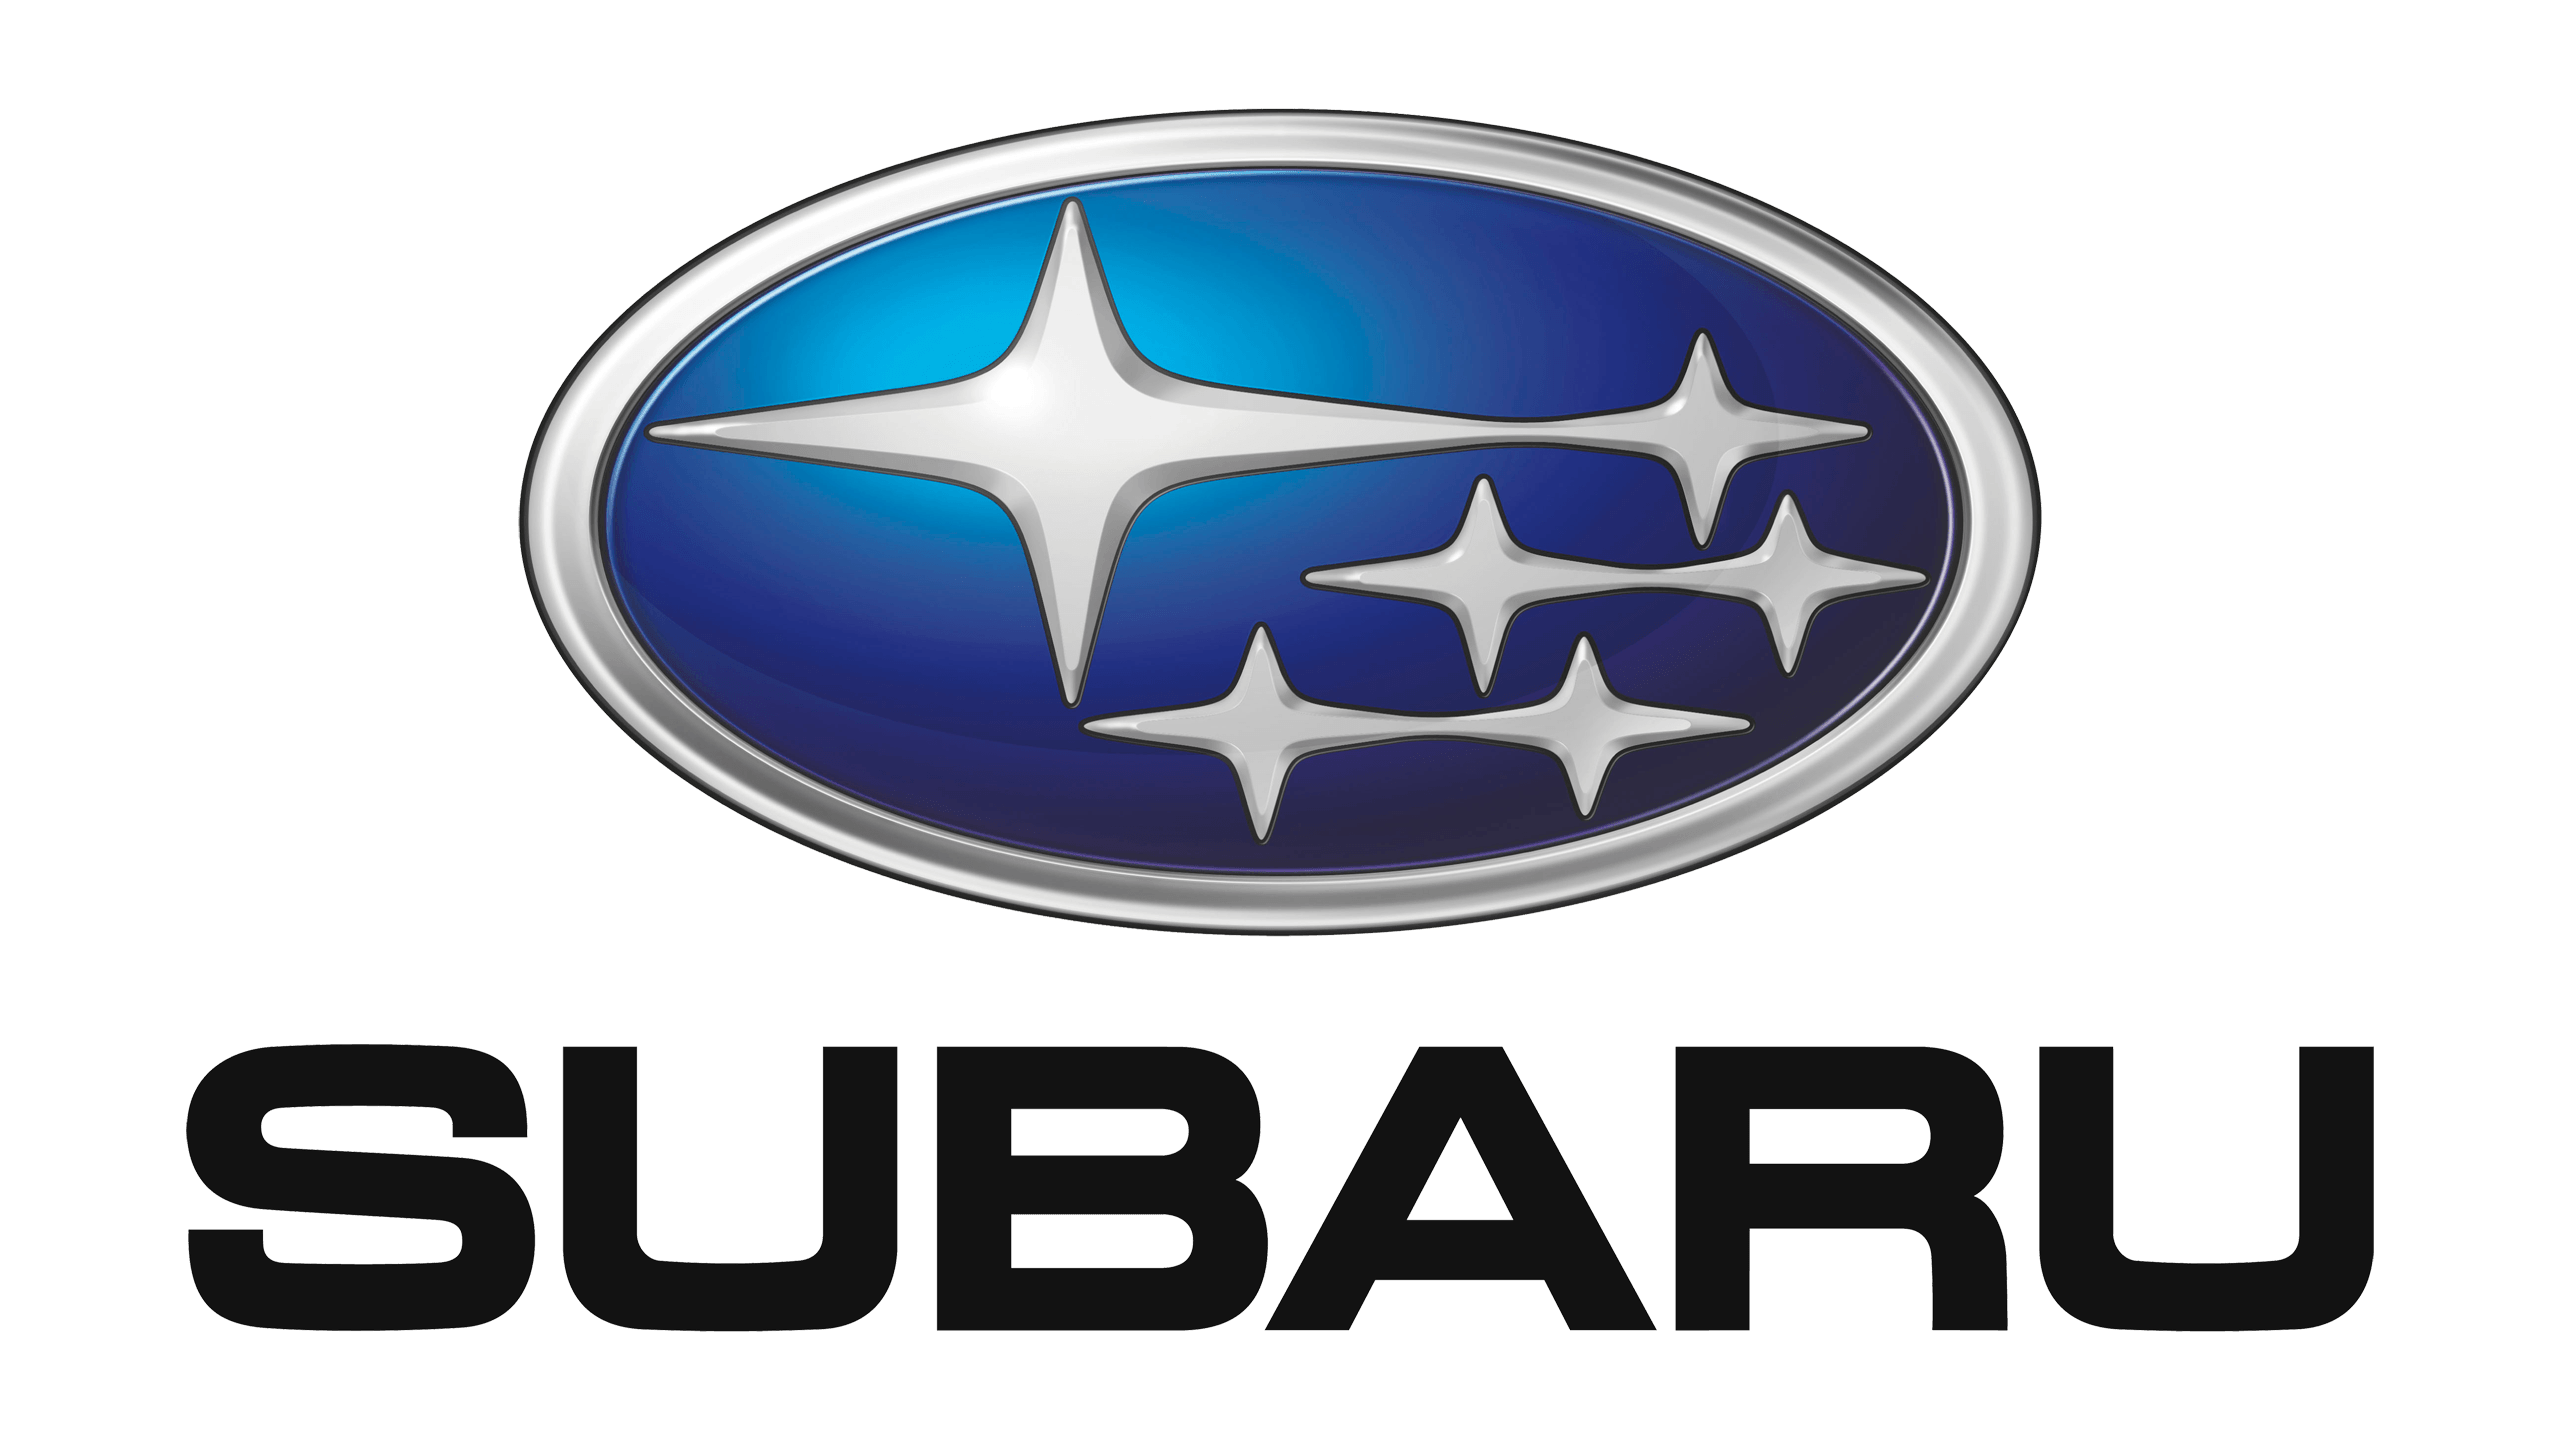 2018 Subaru Logo - Subaru Logo, HD Png, Meaning, Information